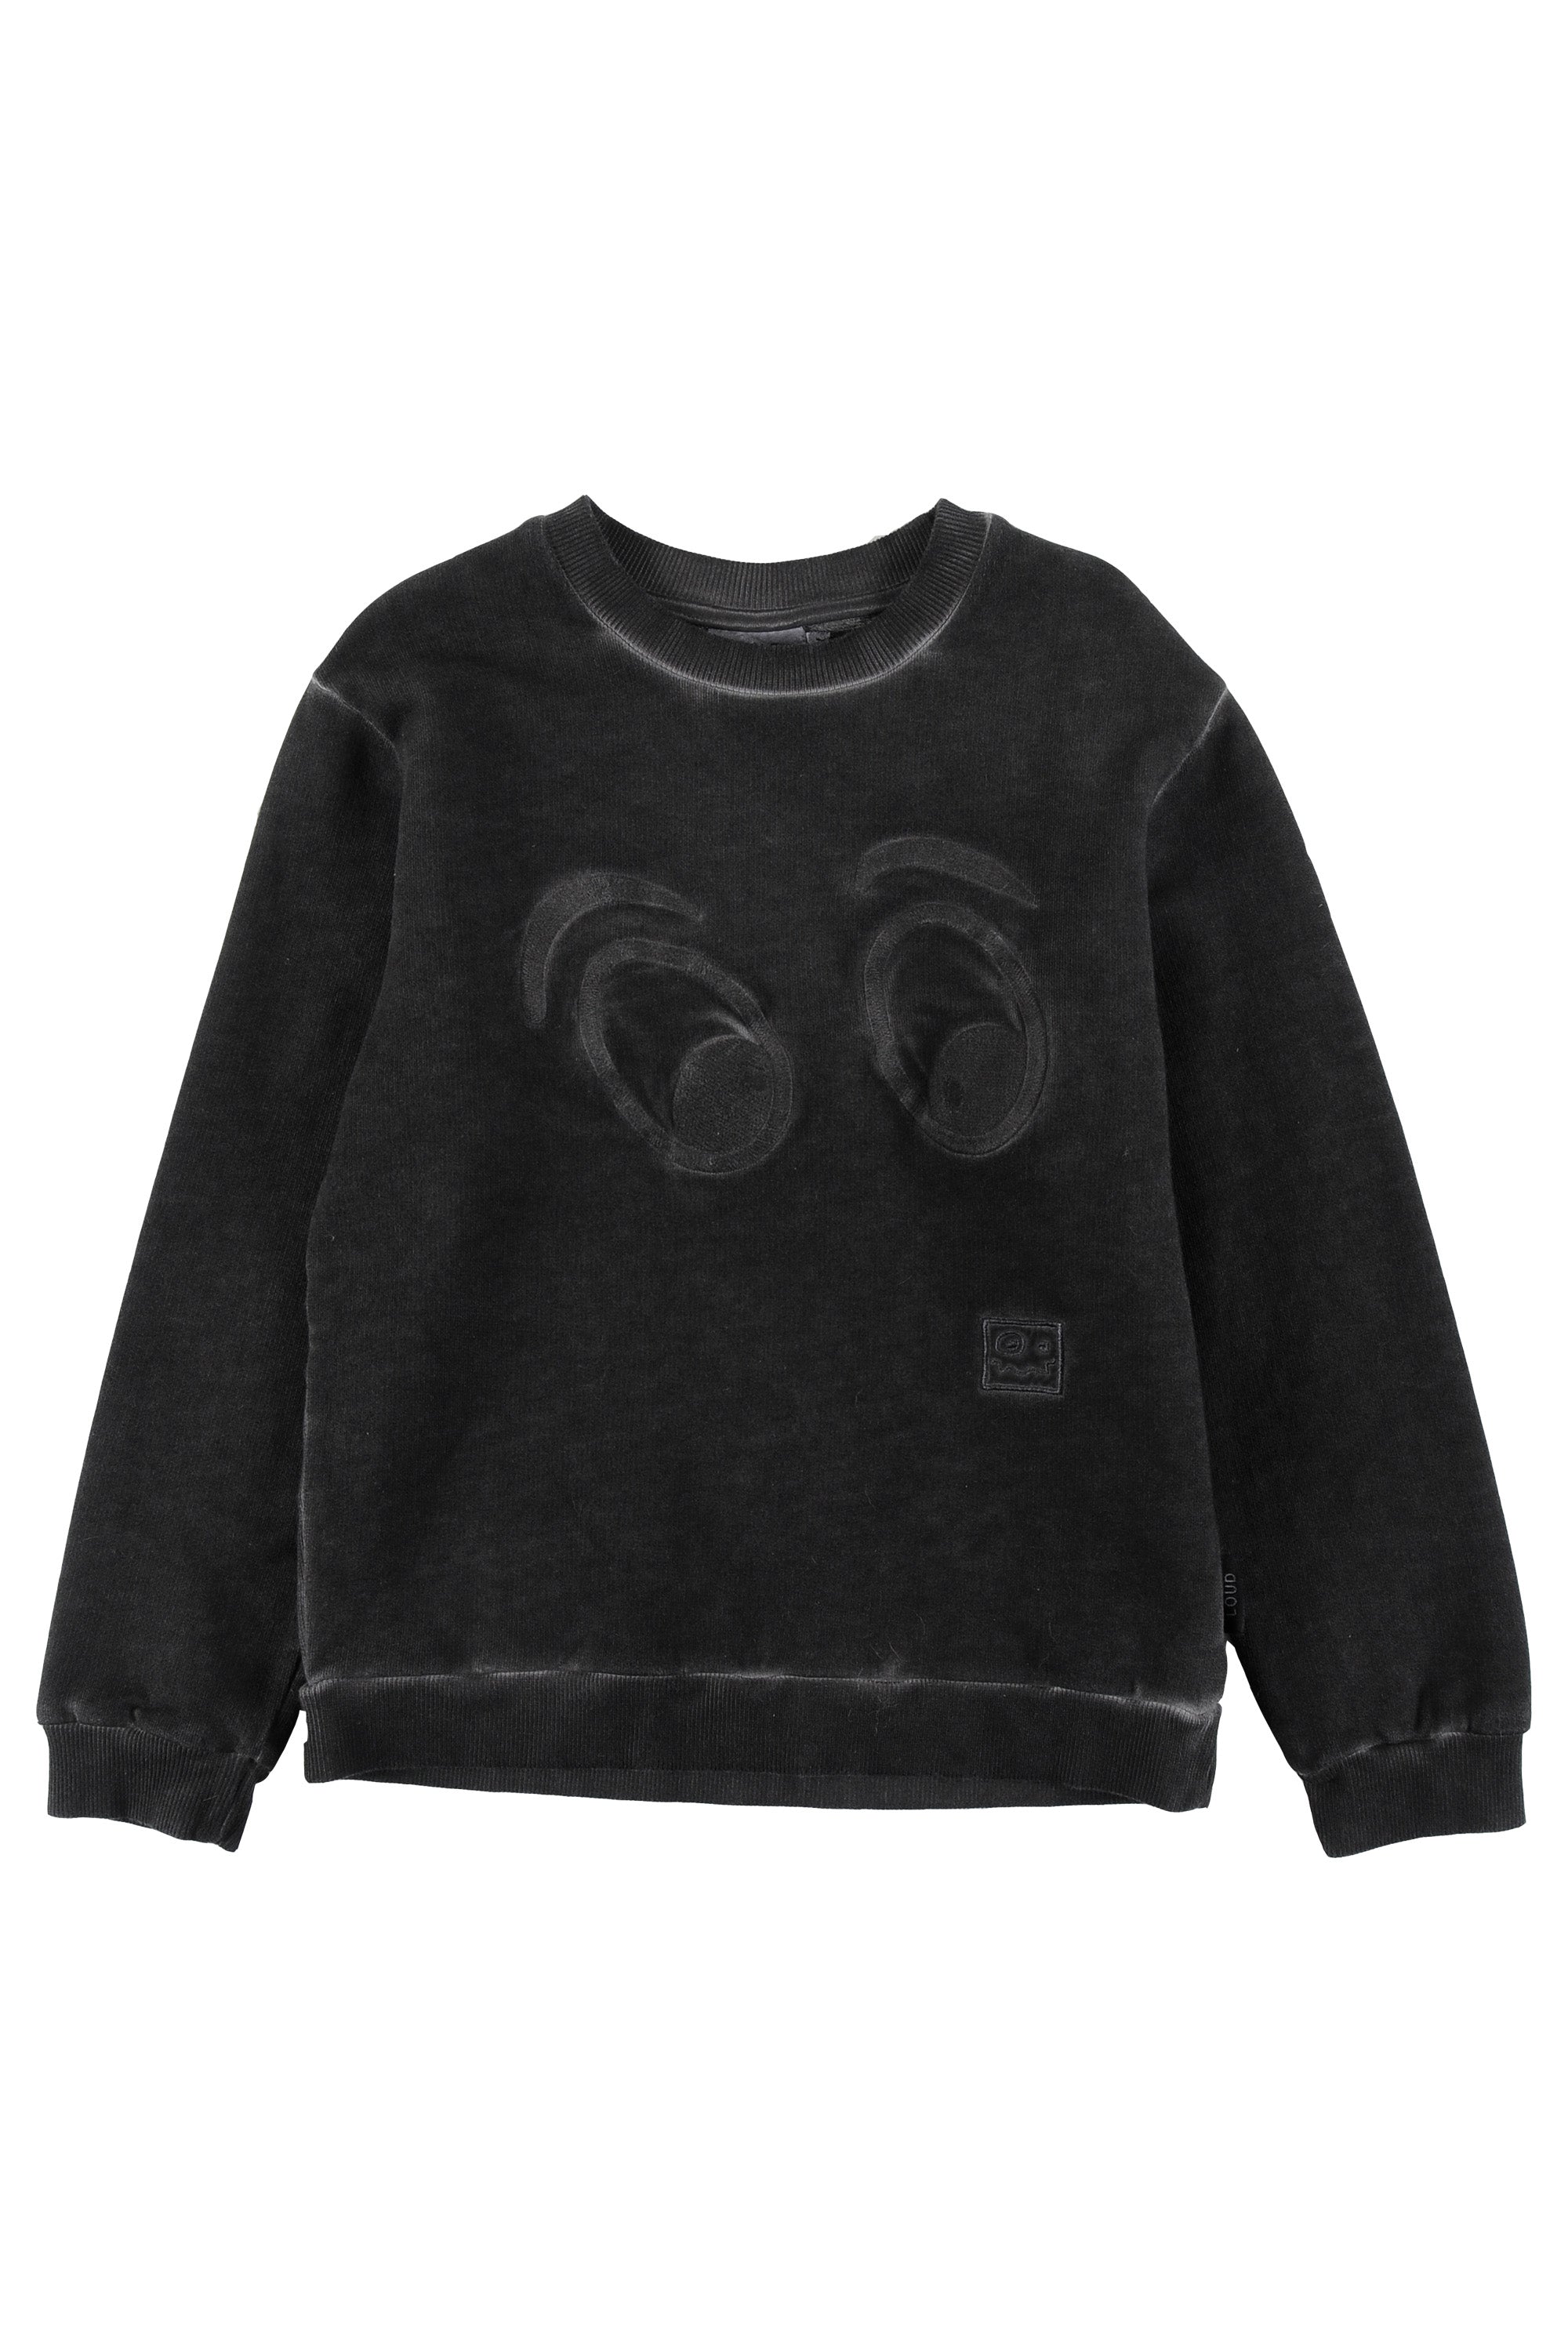 Loud Black – Cub and Panda Sweater Apparel Life